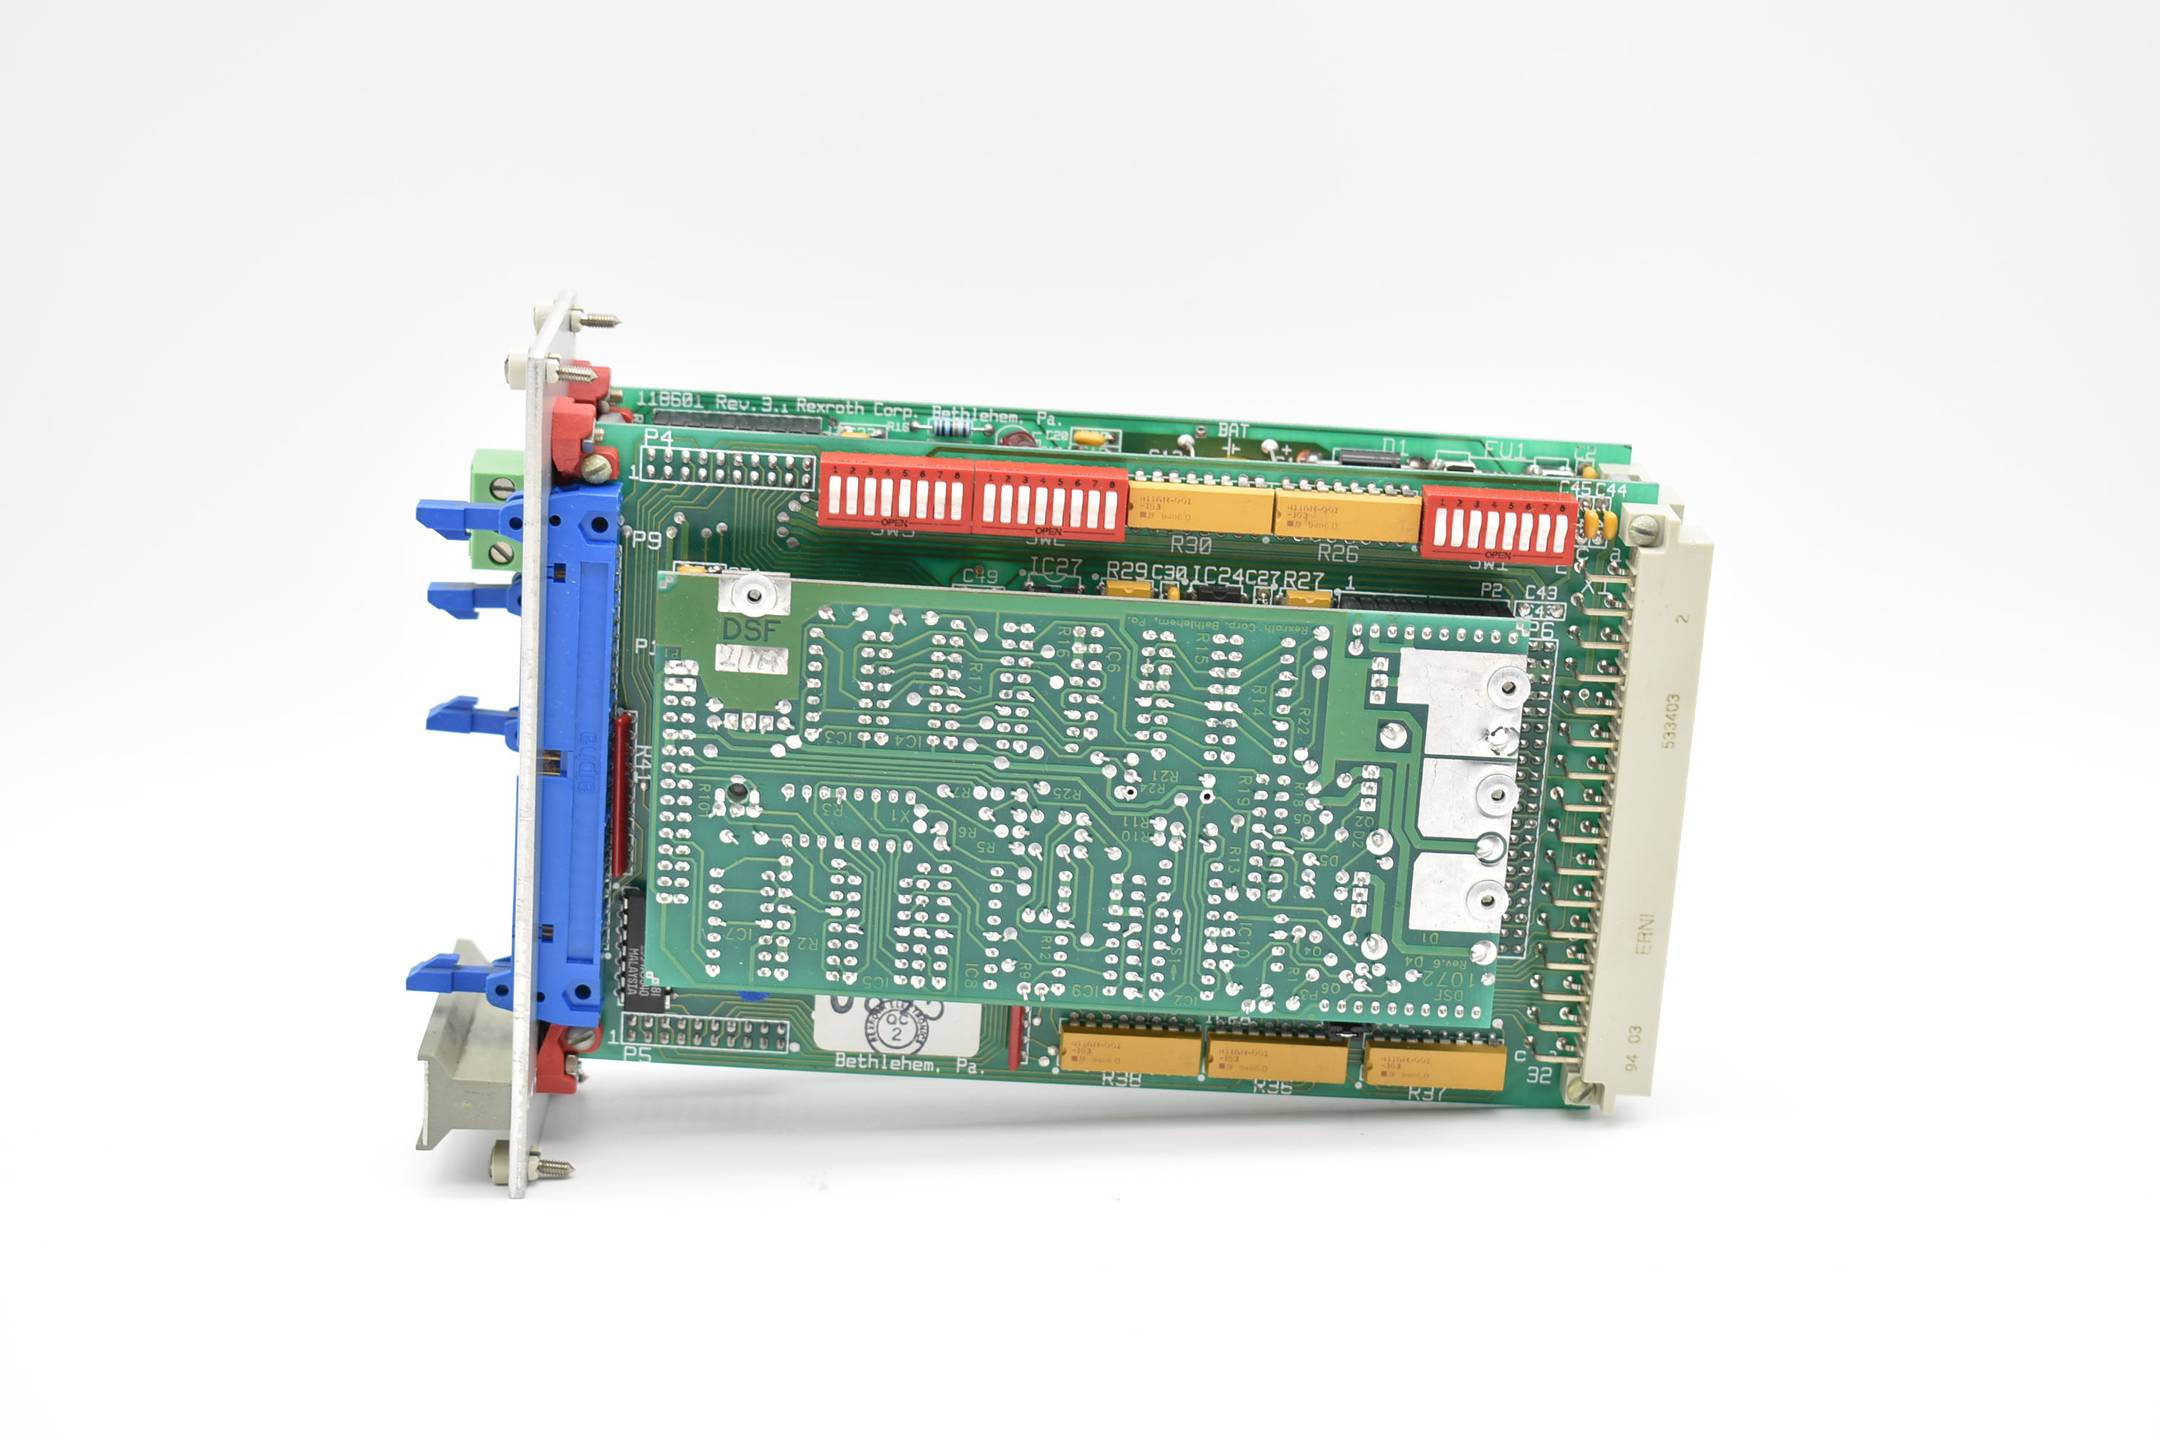 Rexroth Controller Board DLC-100 ( DLC100 )